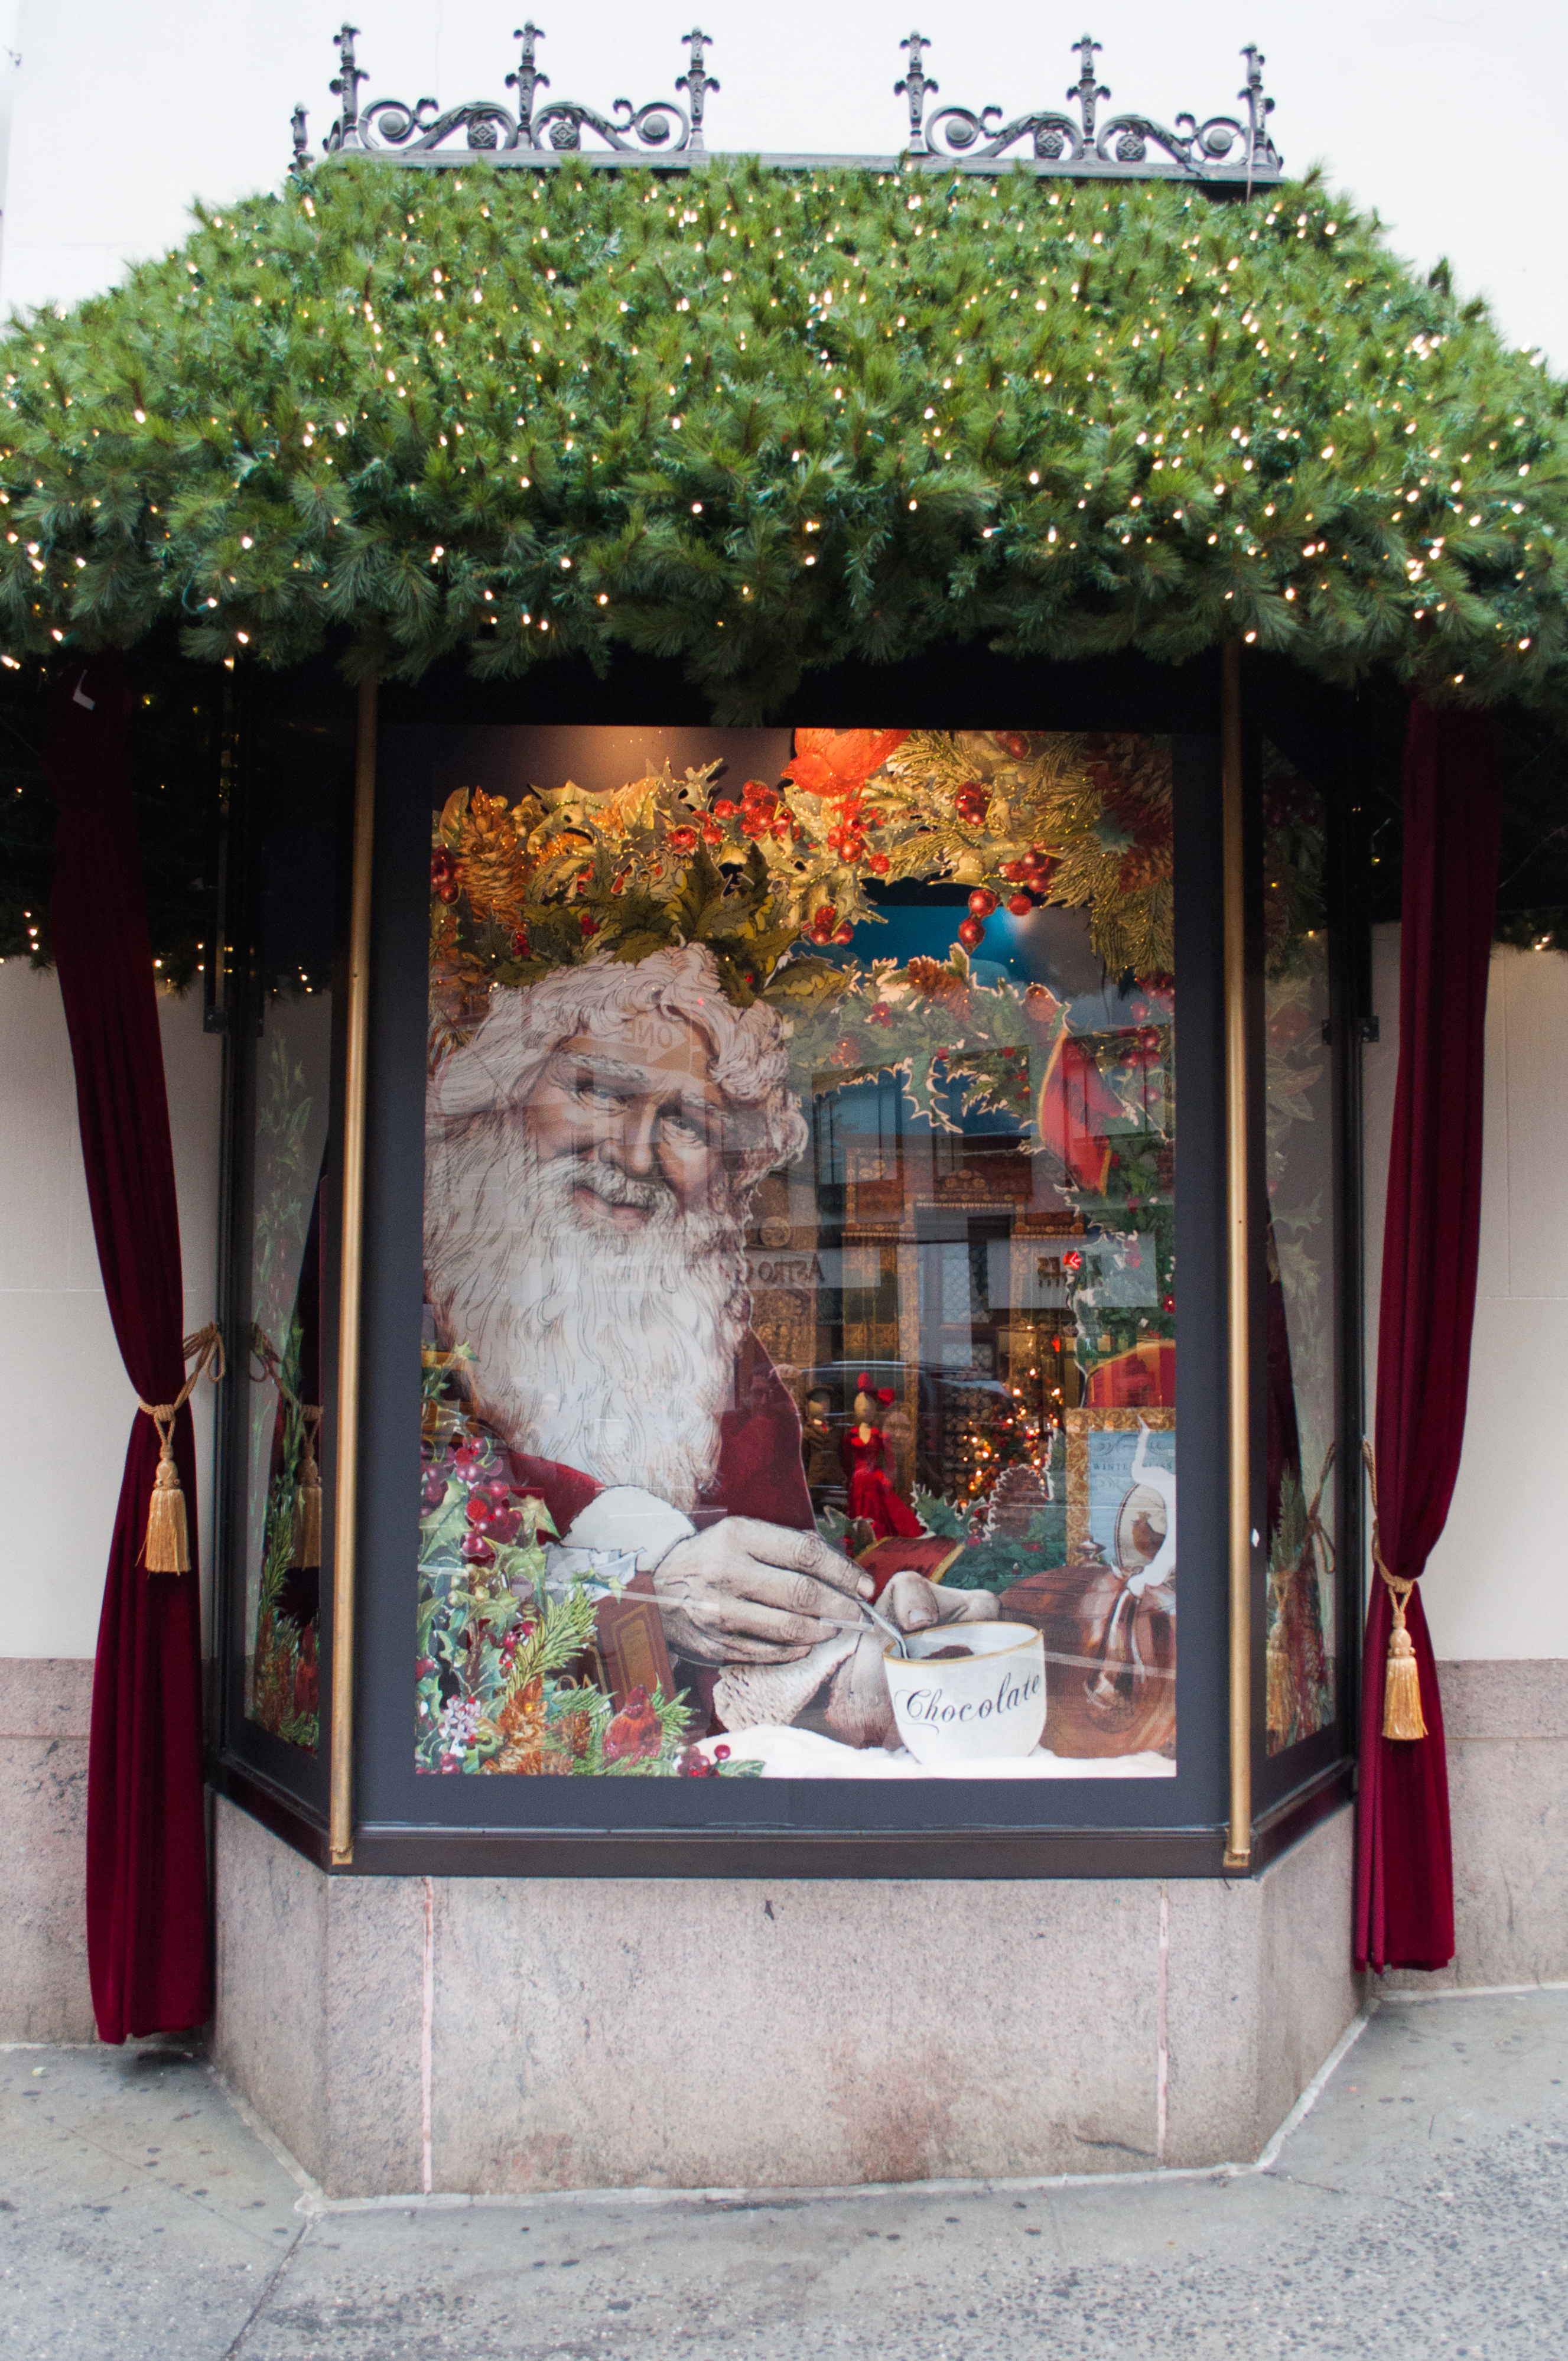 Lord and Taylor Window Santa